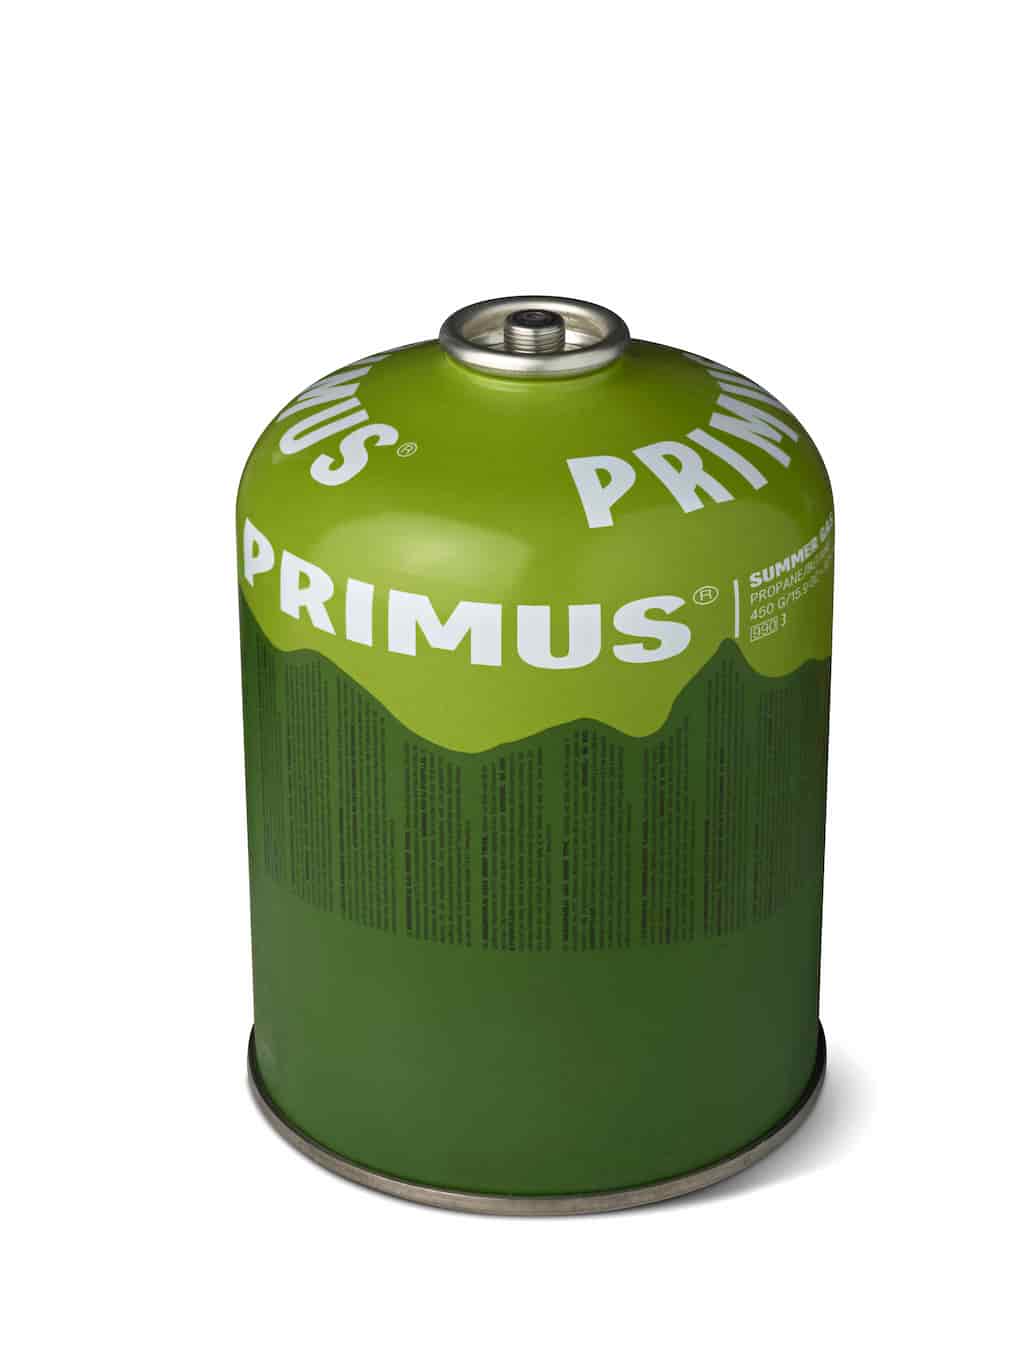 Primus Summer Gas Ventilkartusche 450 g